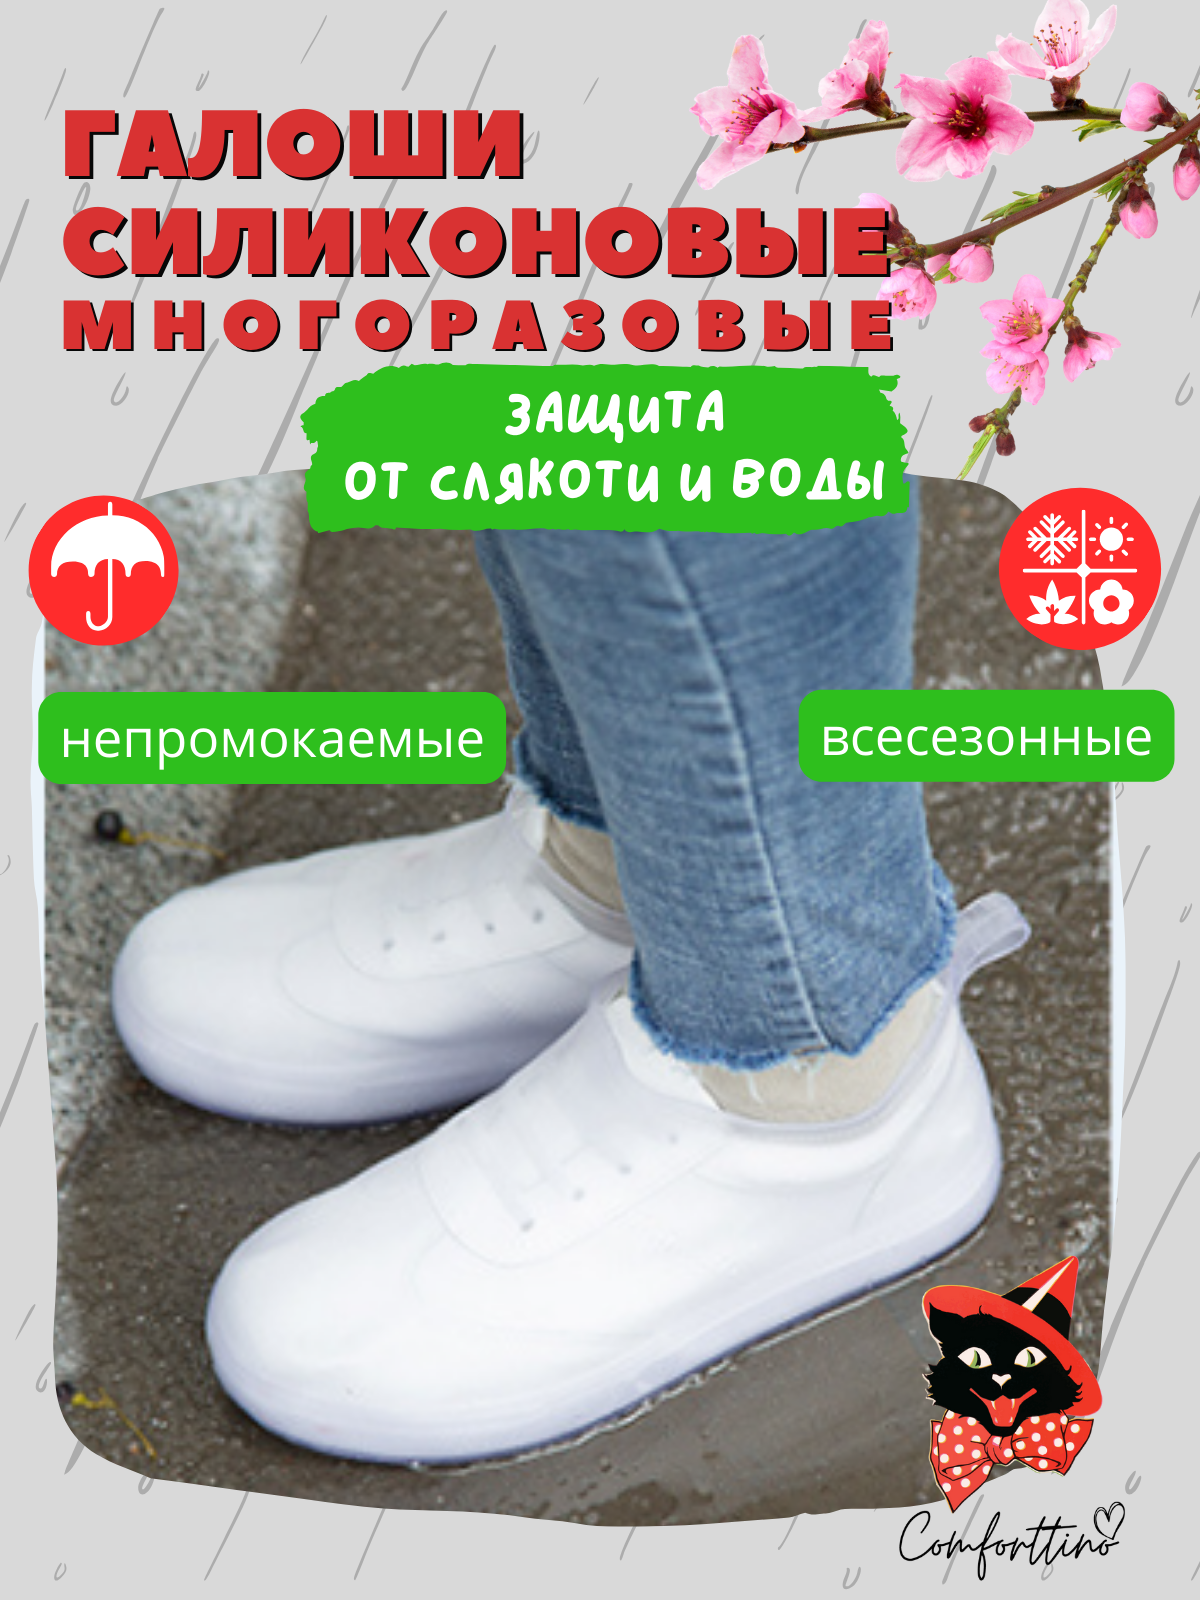 Чехлы защитные низкие многоразовые на обувь от дождя и грязи для взрослых женщин, мужчин и подростков